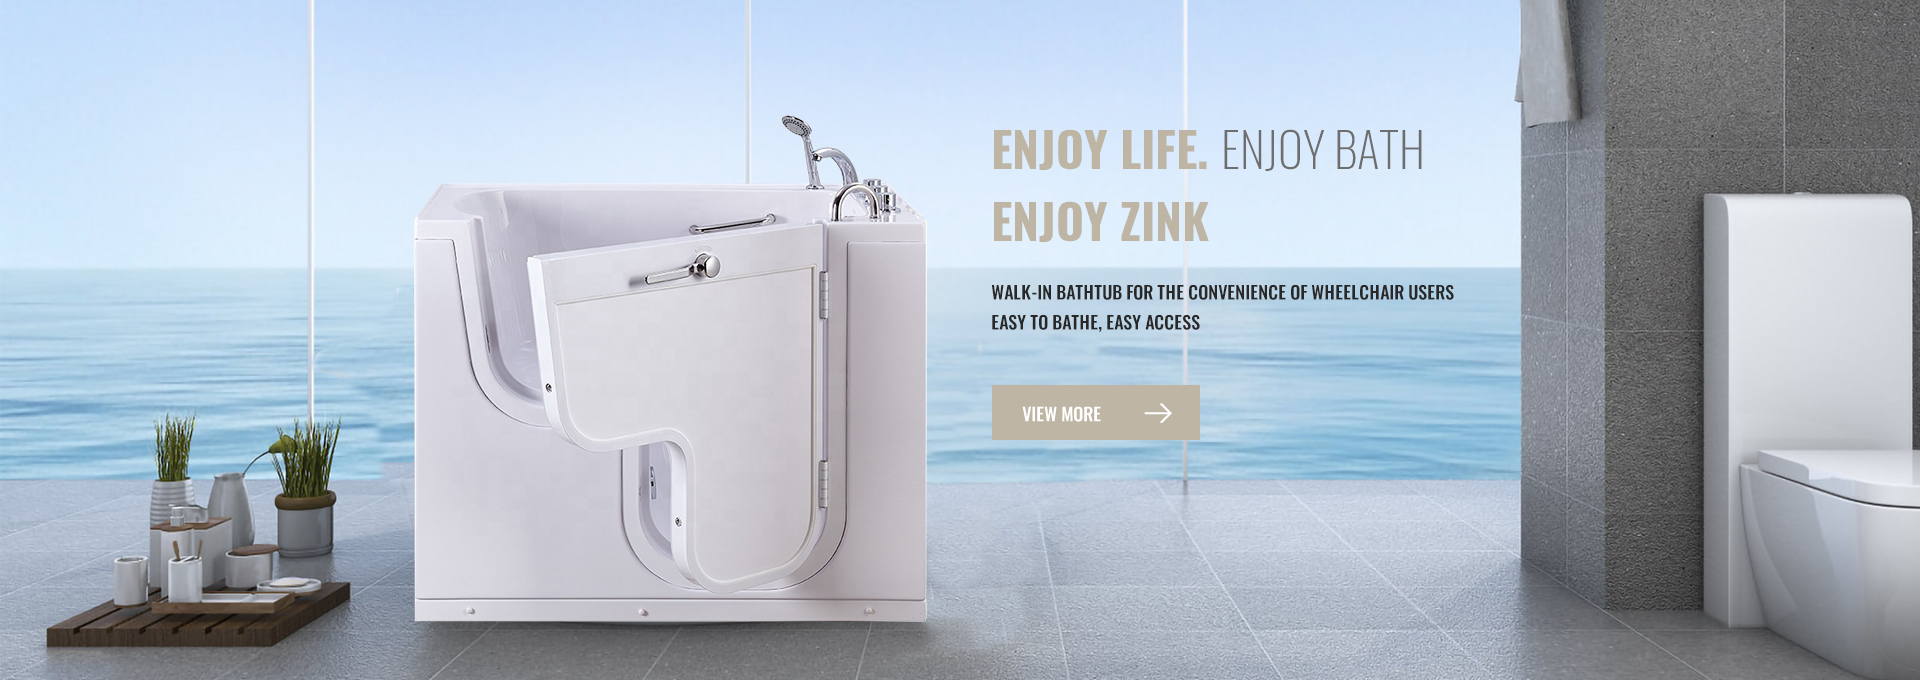 Ишенимдүү жана инновациялык: Foshan Zink Sanitary Ware Co., Ltd. – Жогорку сапаттагы ванналар жана башкалар боюнча Сиздин ишенимдүү өнөктөшүңүз